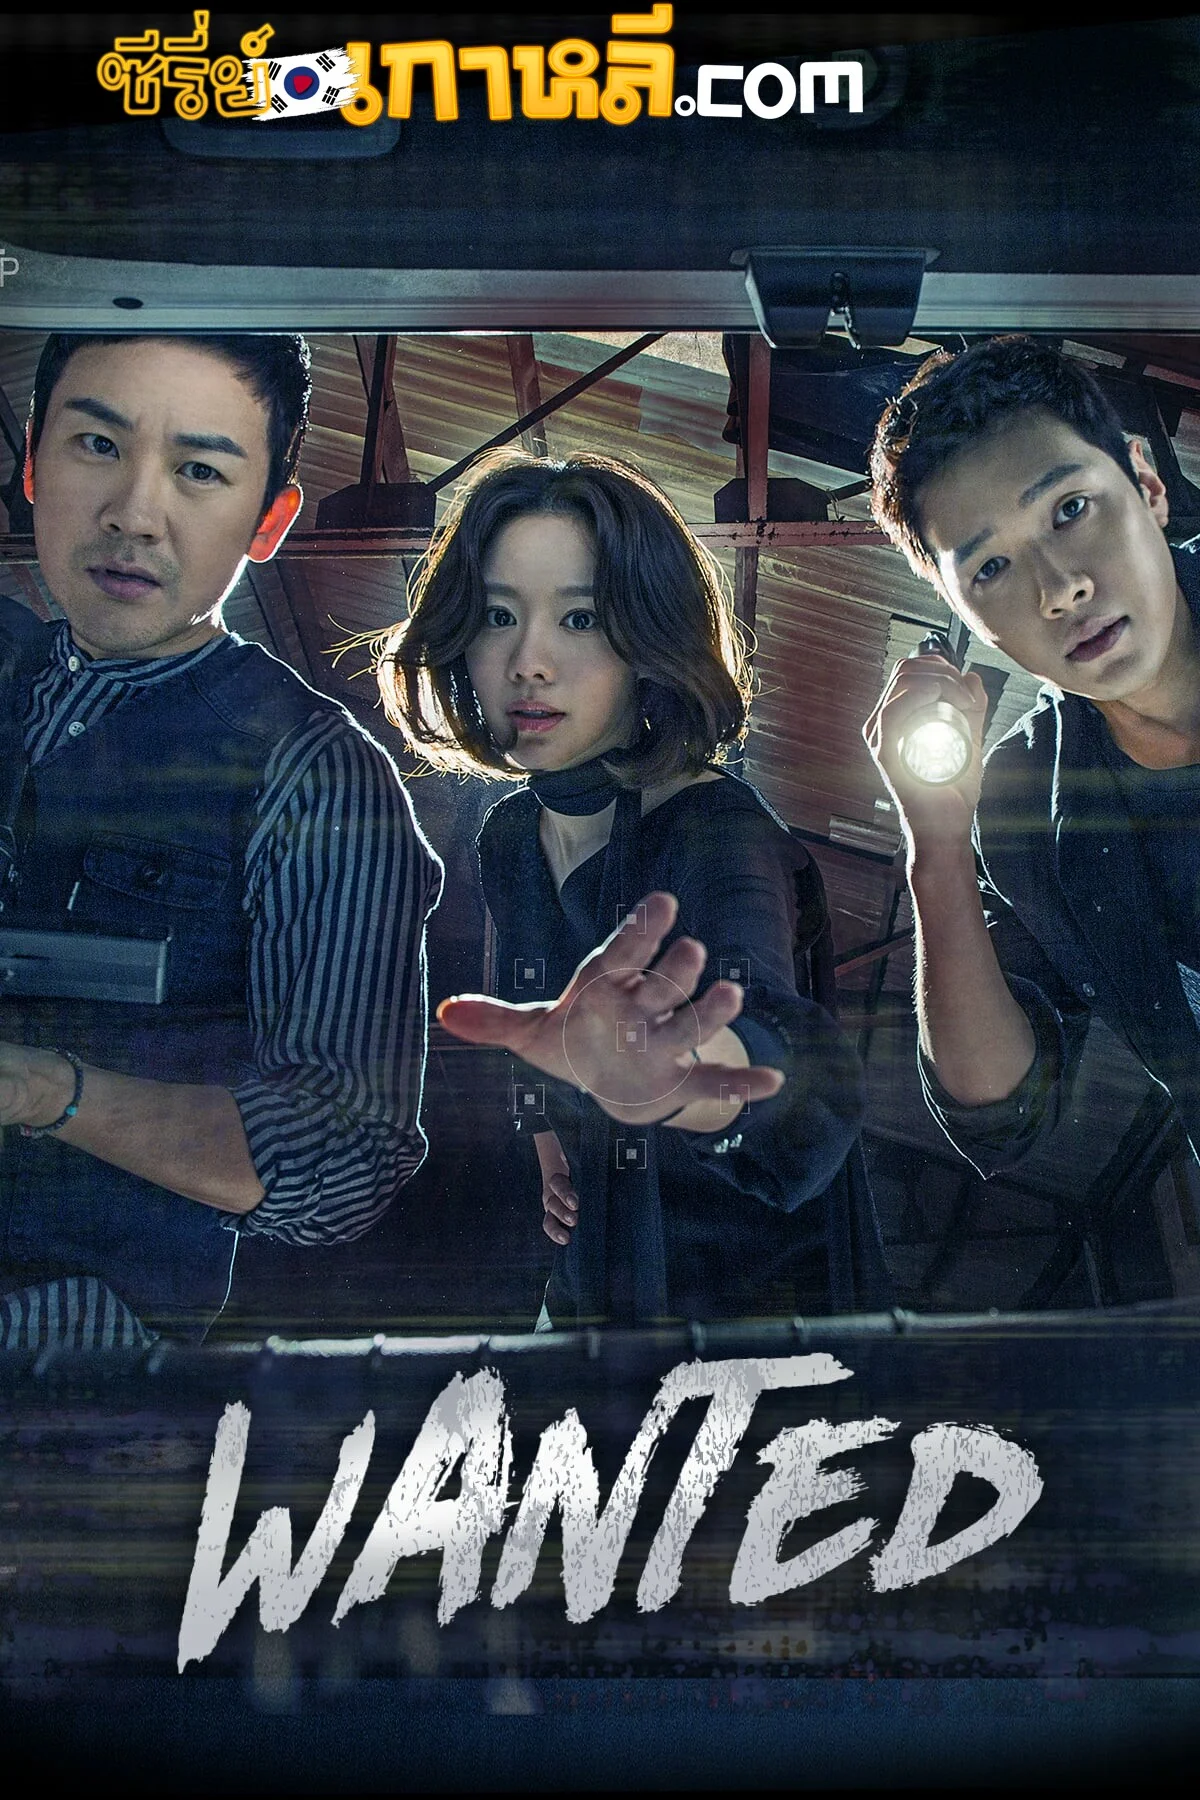 Wanted (2016) ตอนที่ 1-16 จบ ซับไทย